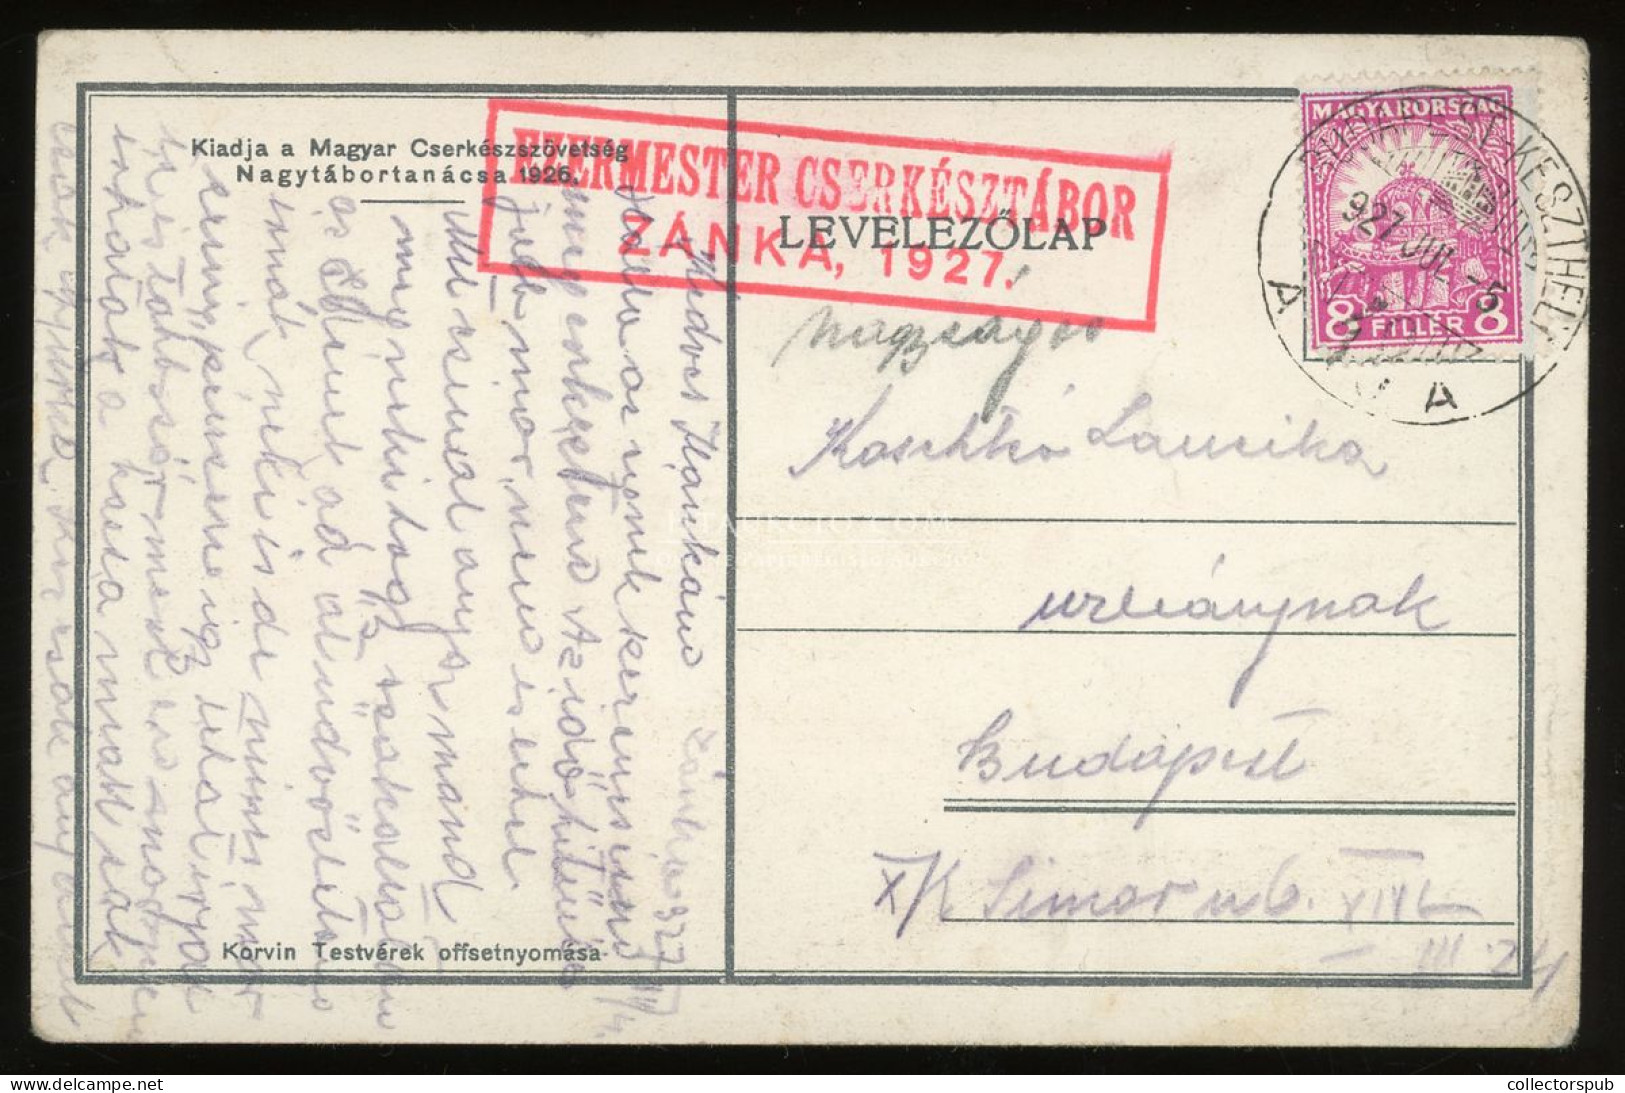 CSERKÉSZ. 1927. Cserkész Képeslap Ezermester Cserkésztábor Zánka Bélyegzéssel - Hungary